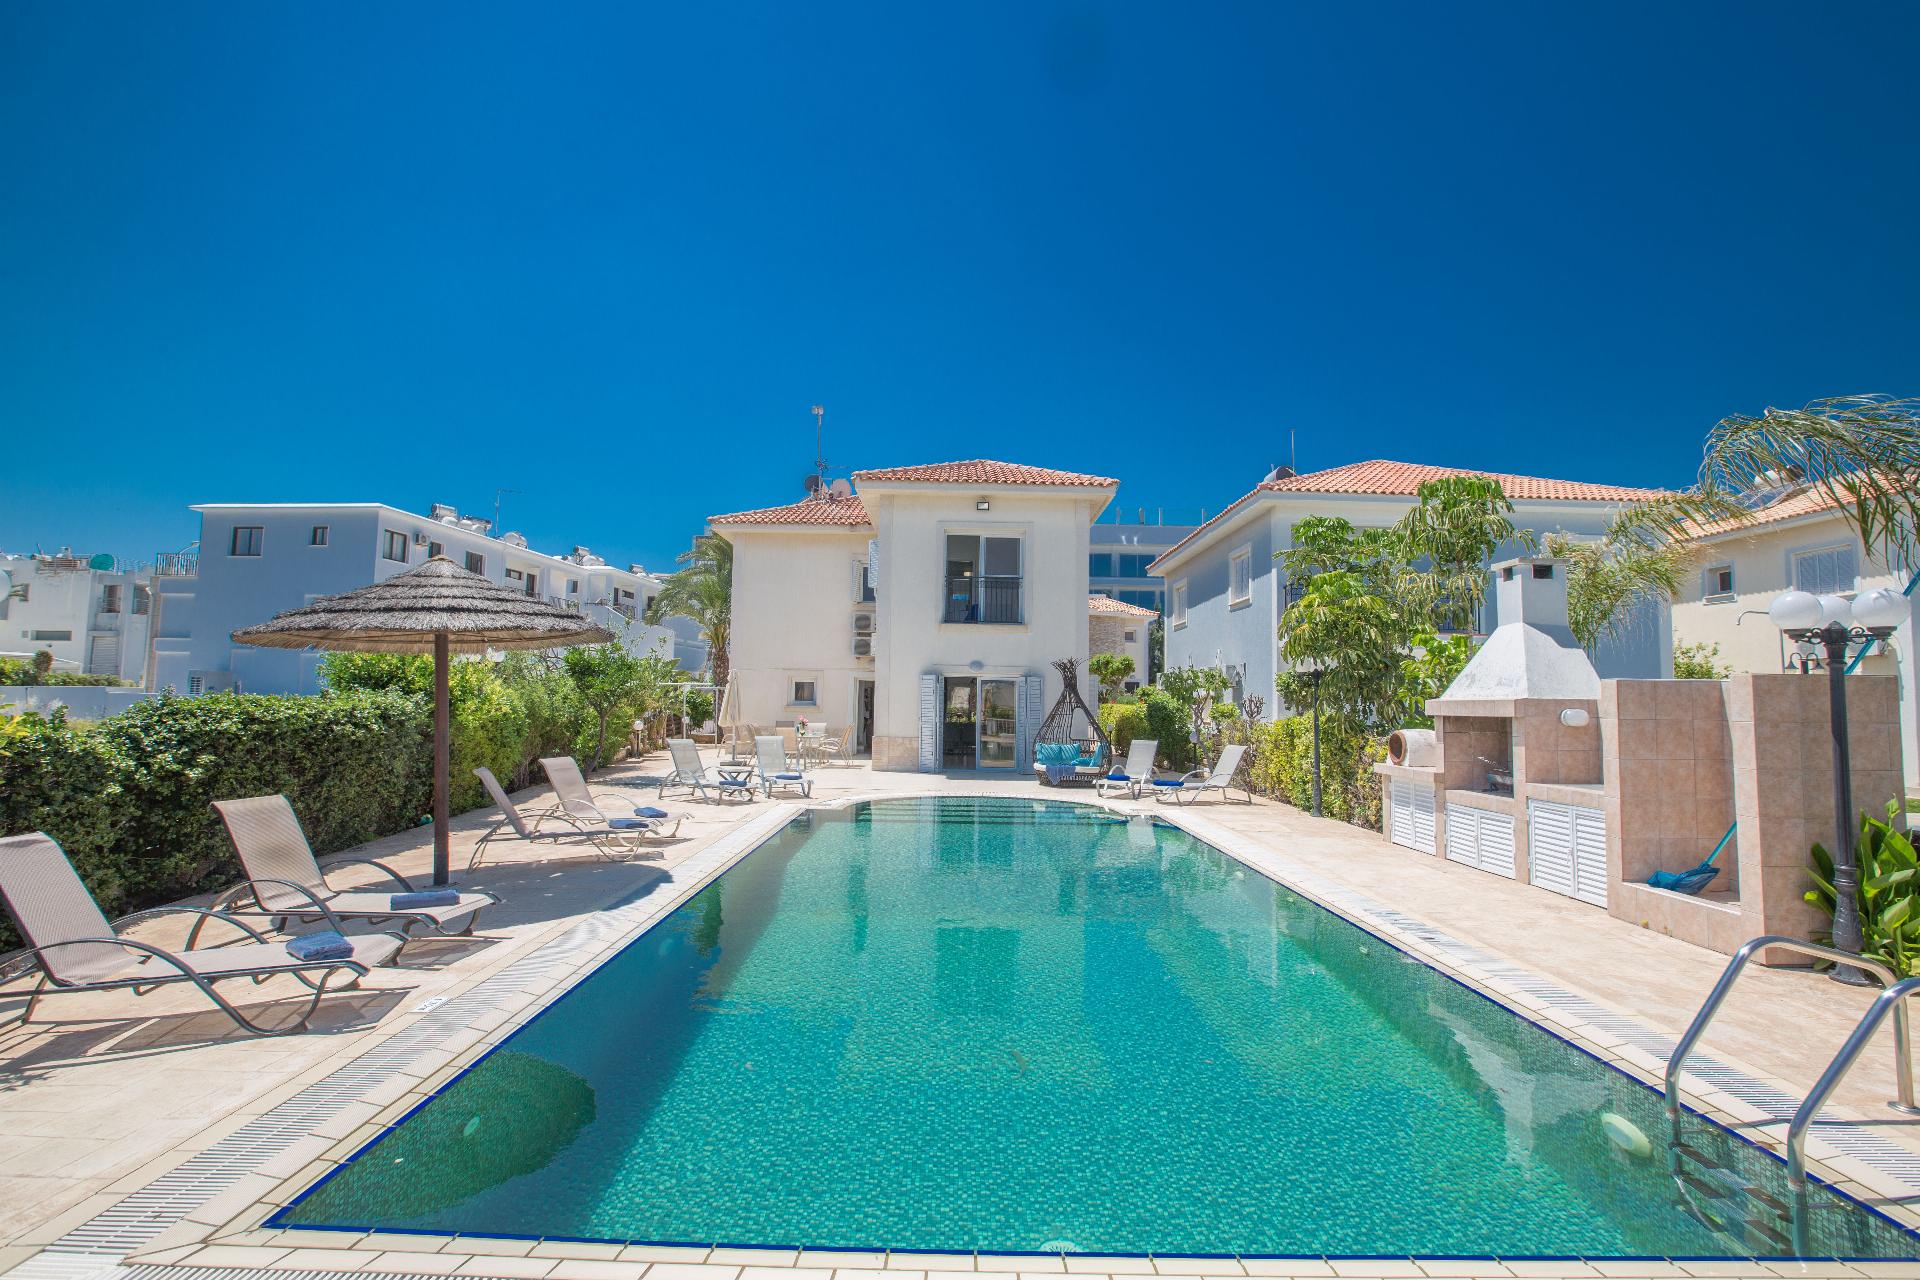 Ferienhaus mit Privatpool für 9 Personen ca.  Ferienhaus in Zypern